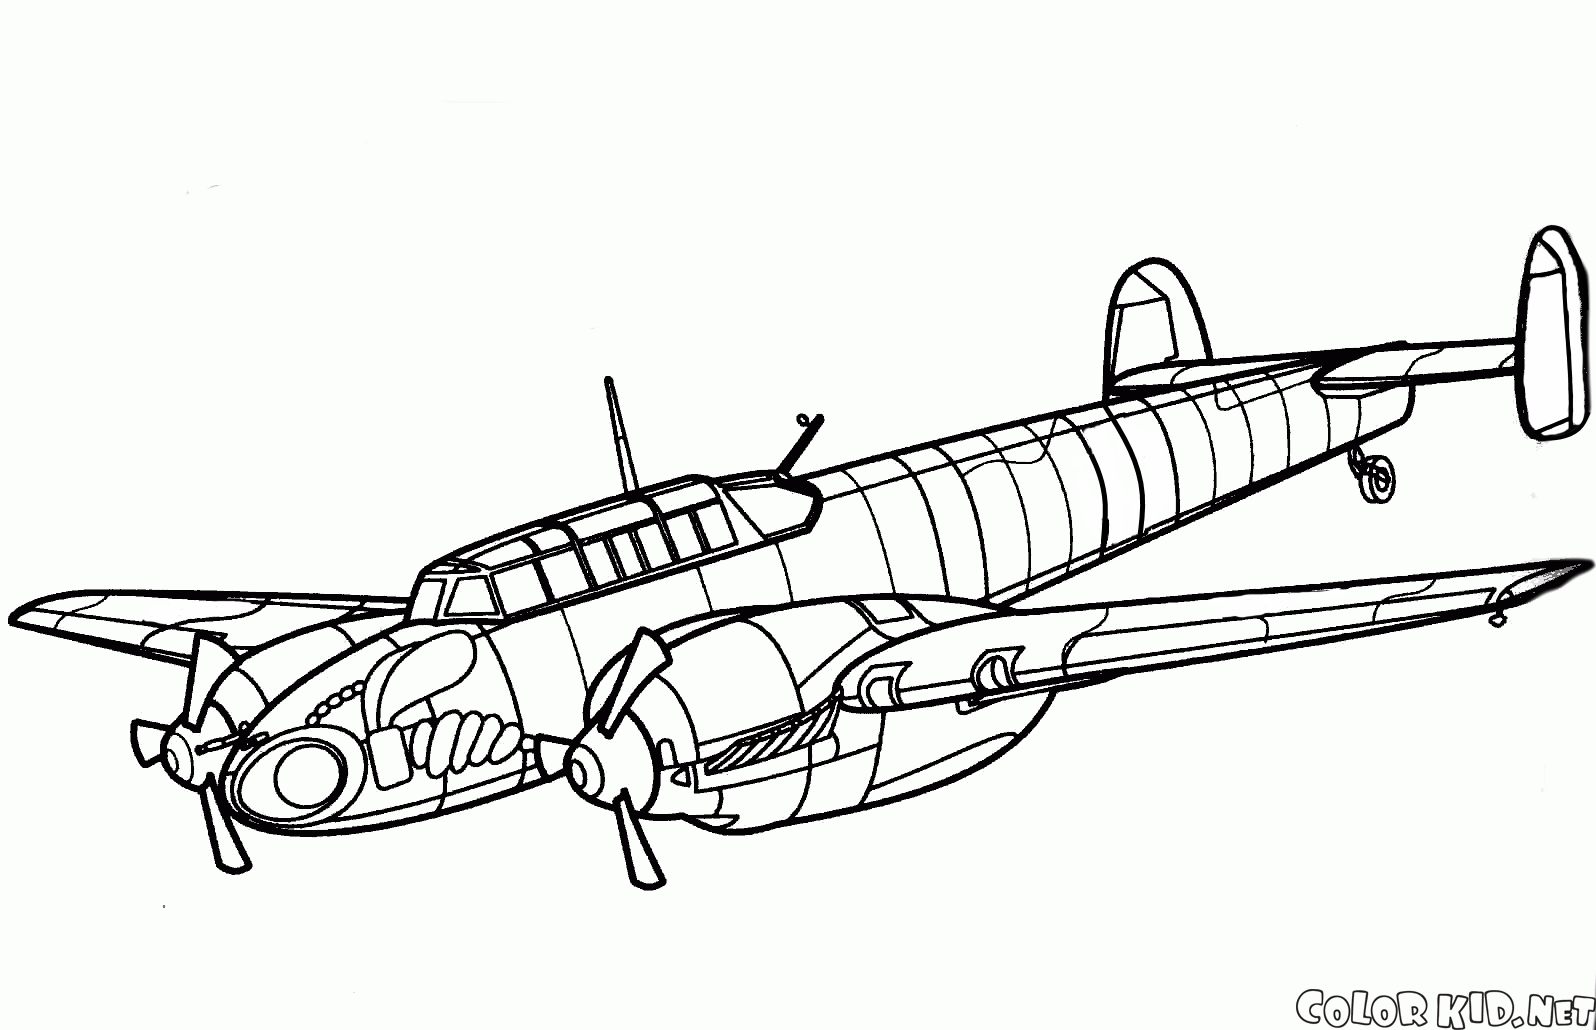 Messerschmitt-100S-4 / V de aviones de combate